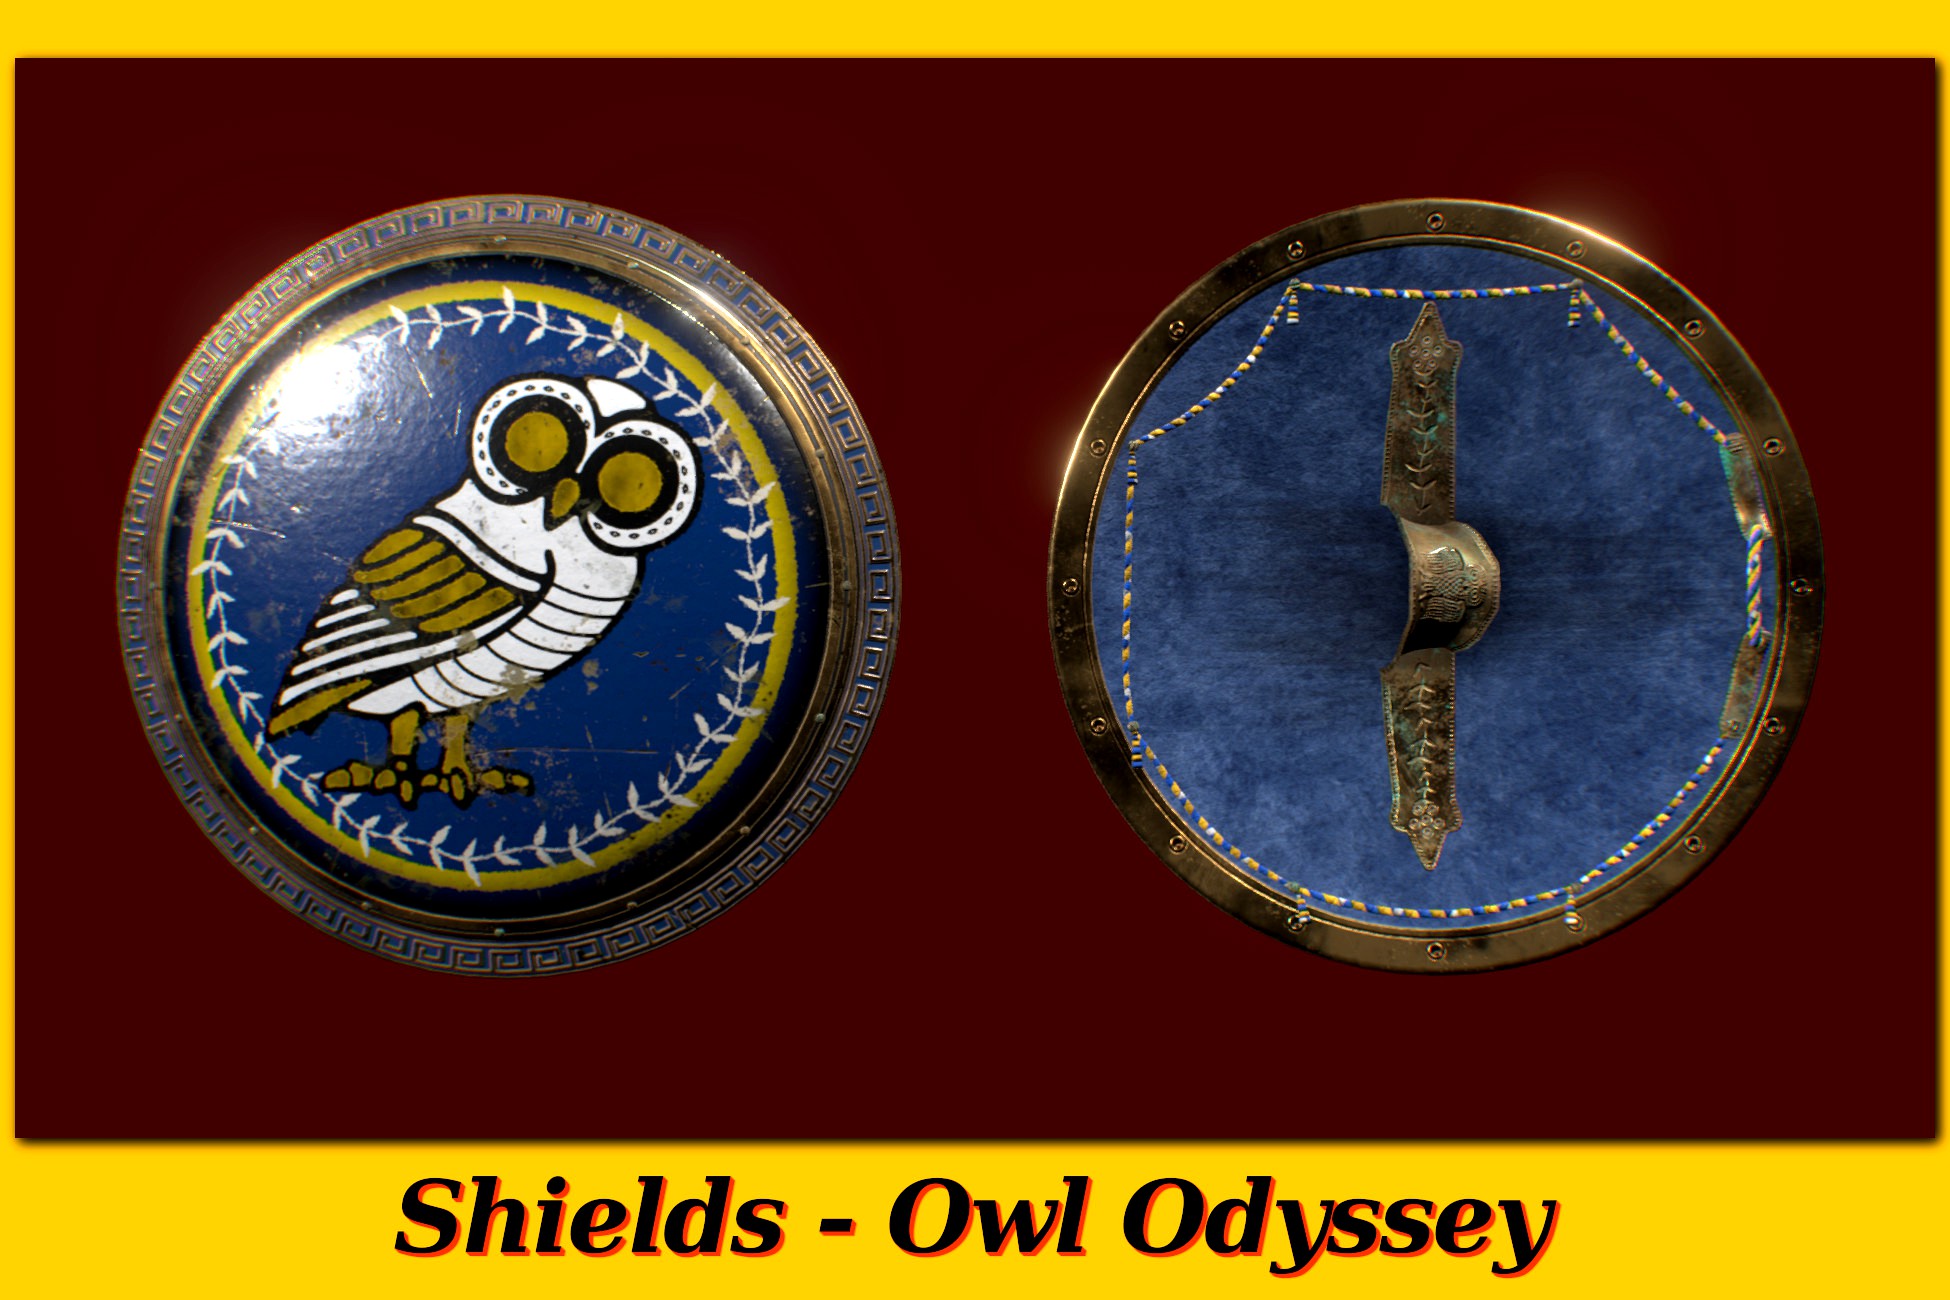 Shields Mythology - Owl Odyssey